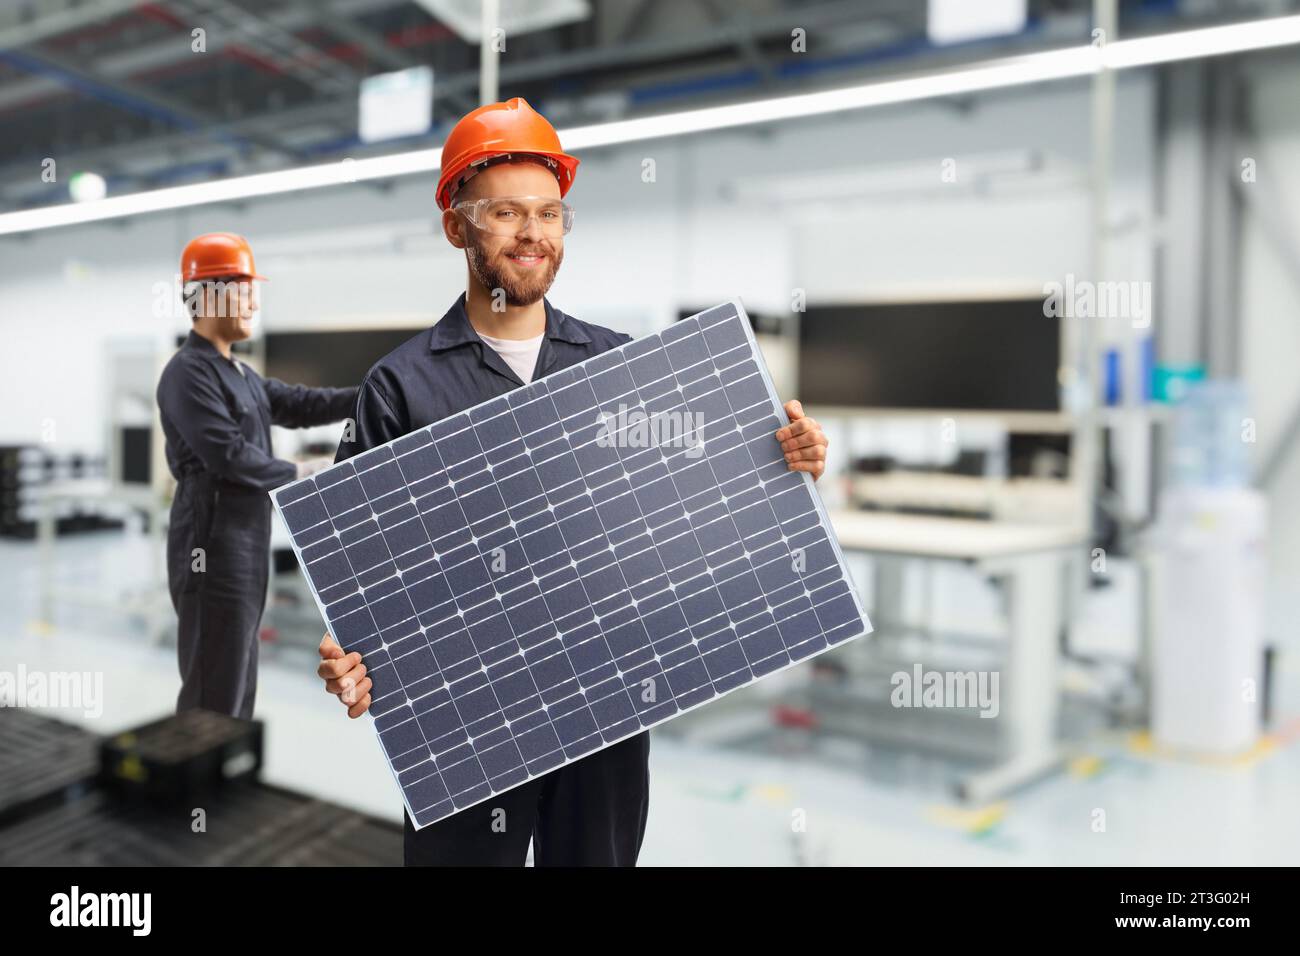 Giovane lavoratore in una unifrom che tiene un modulo fotovoltaico all'interno di una fabbrica Foto Stock